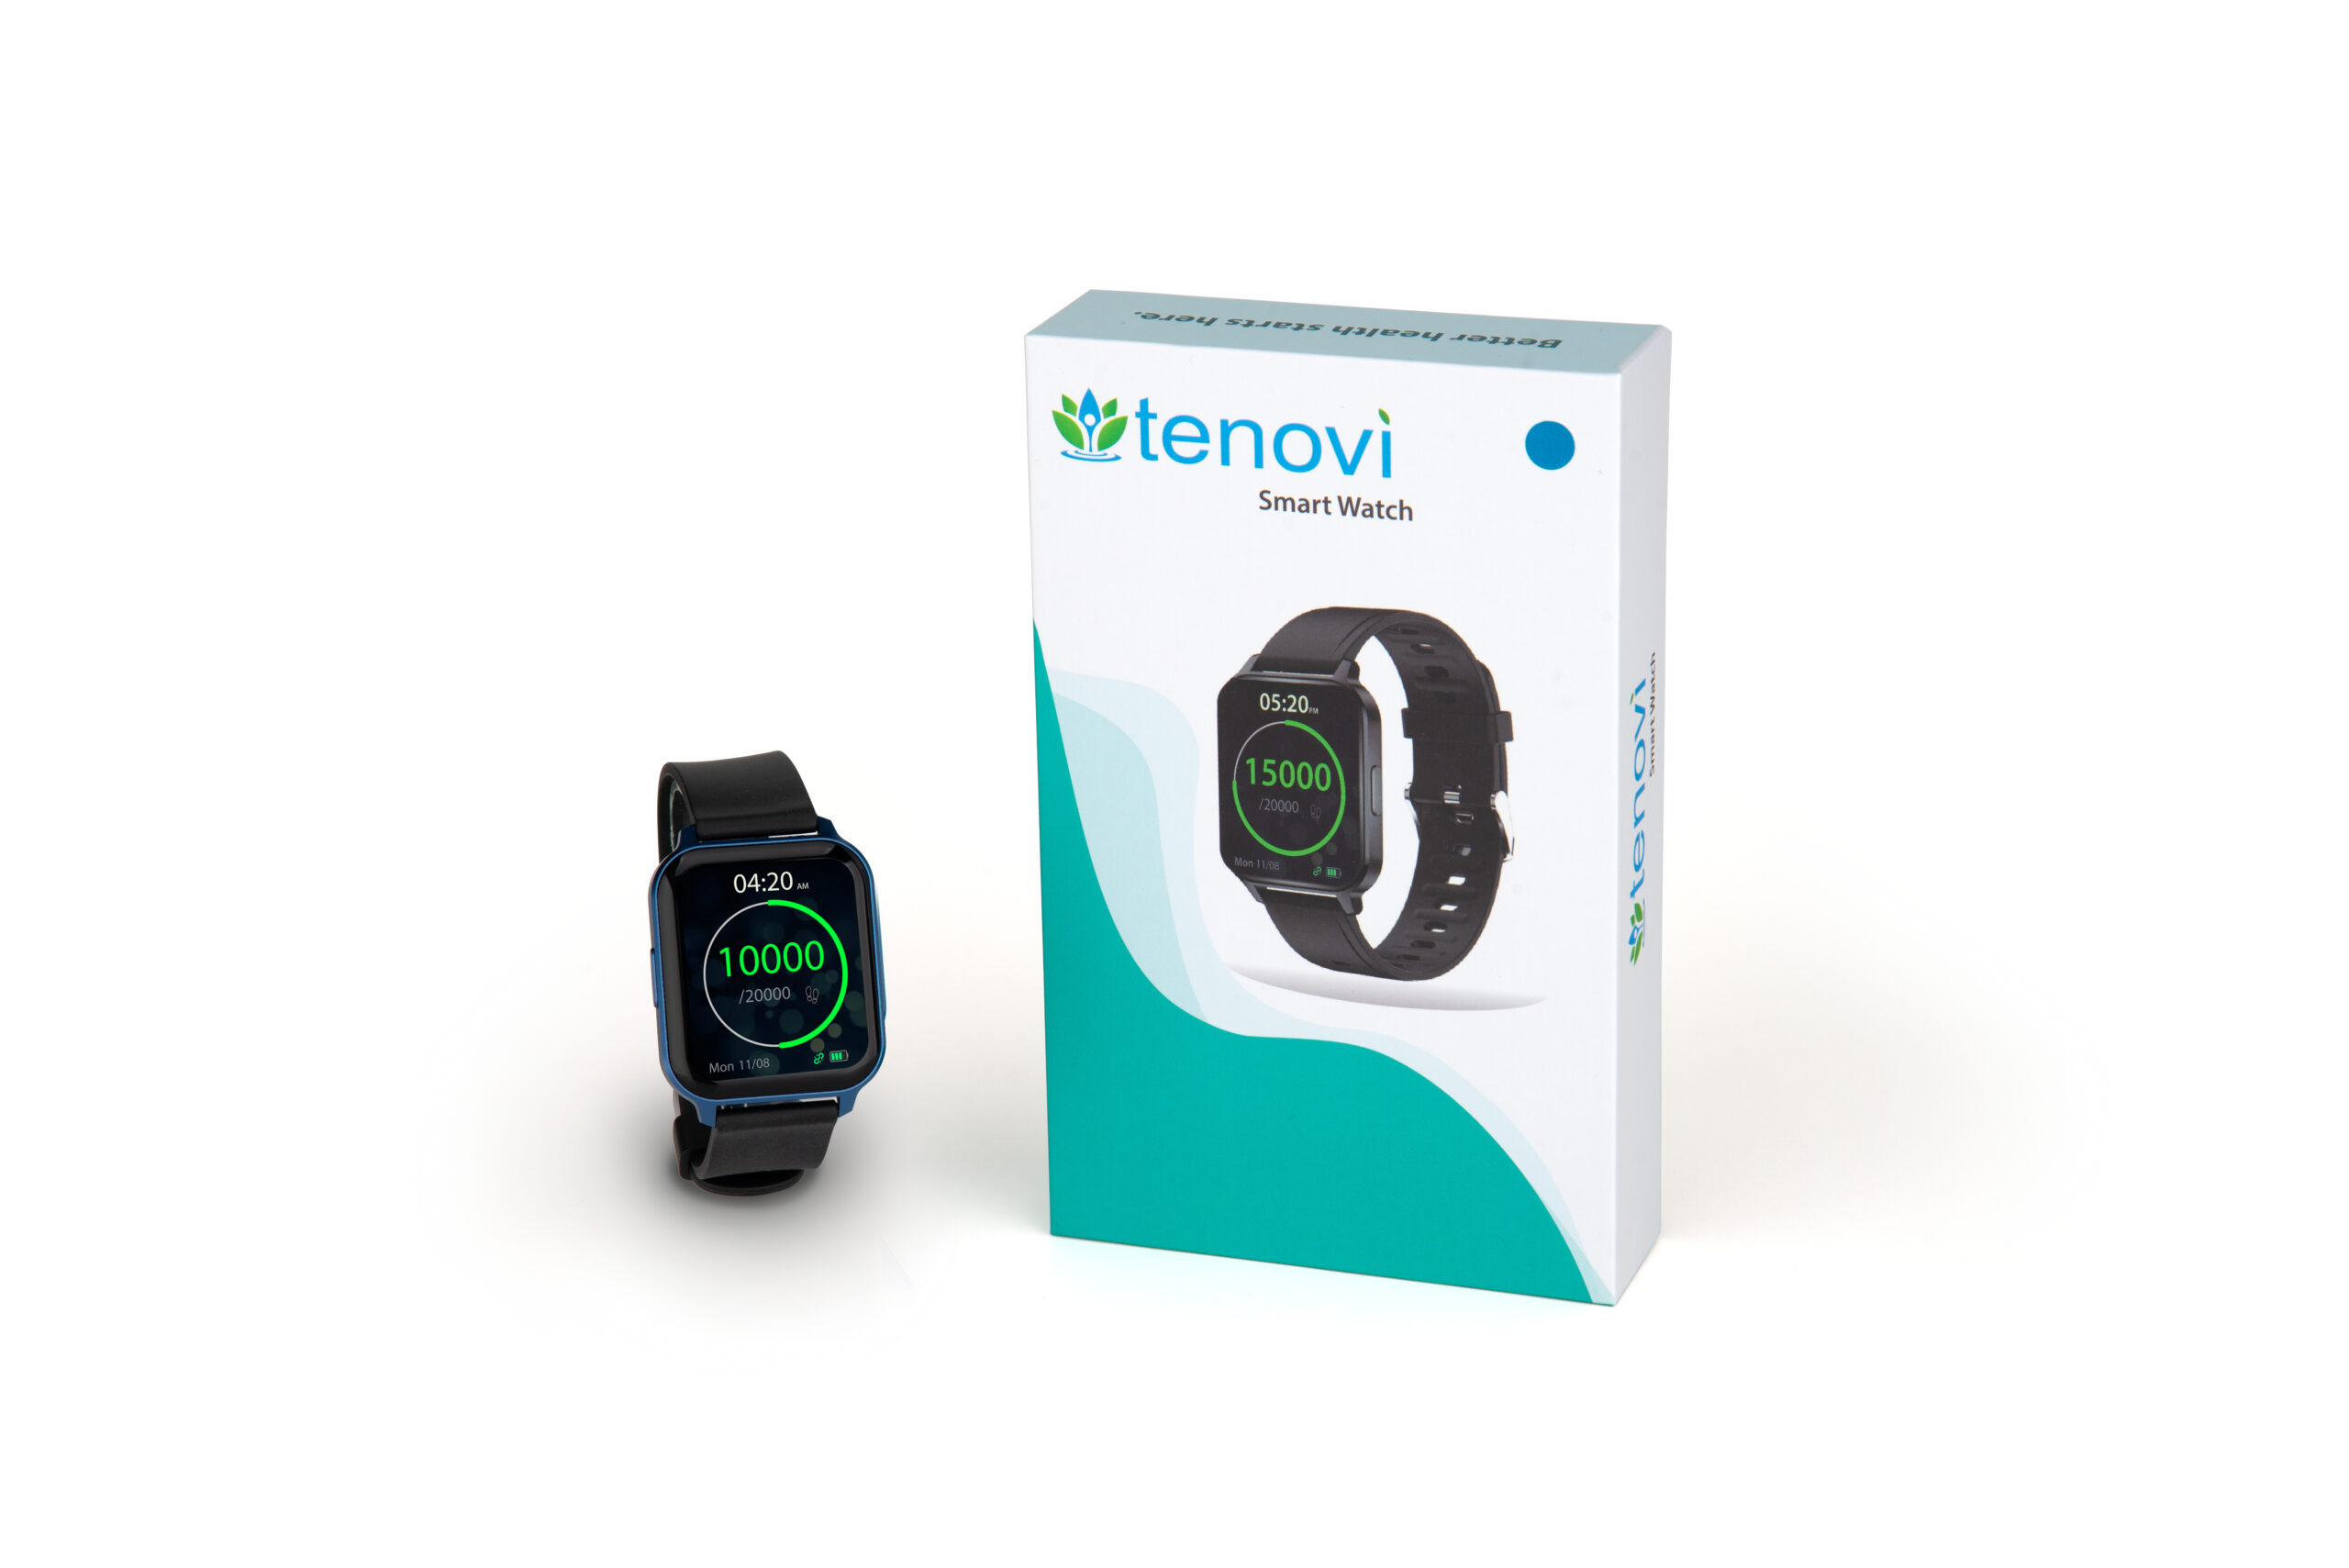 Tenovi Smart Watch Package